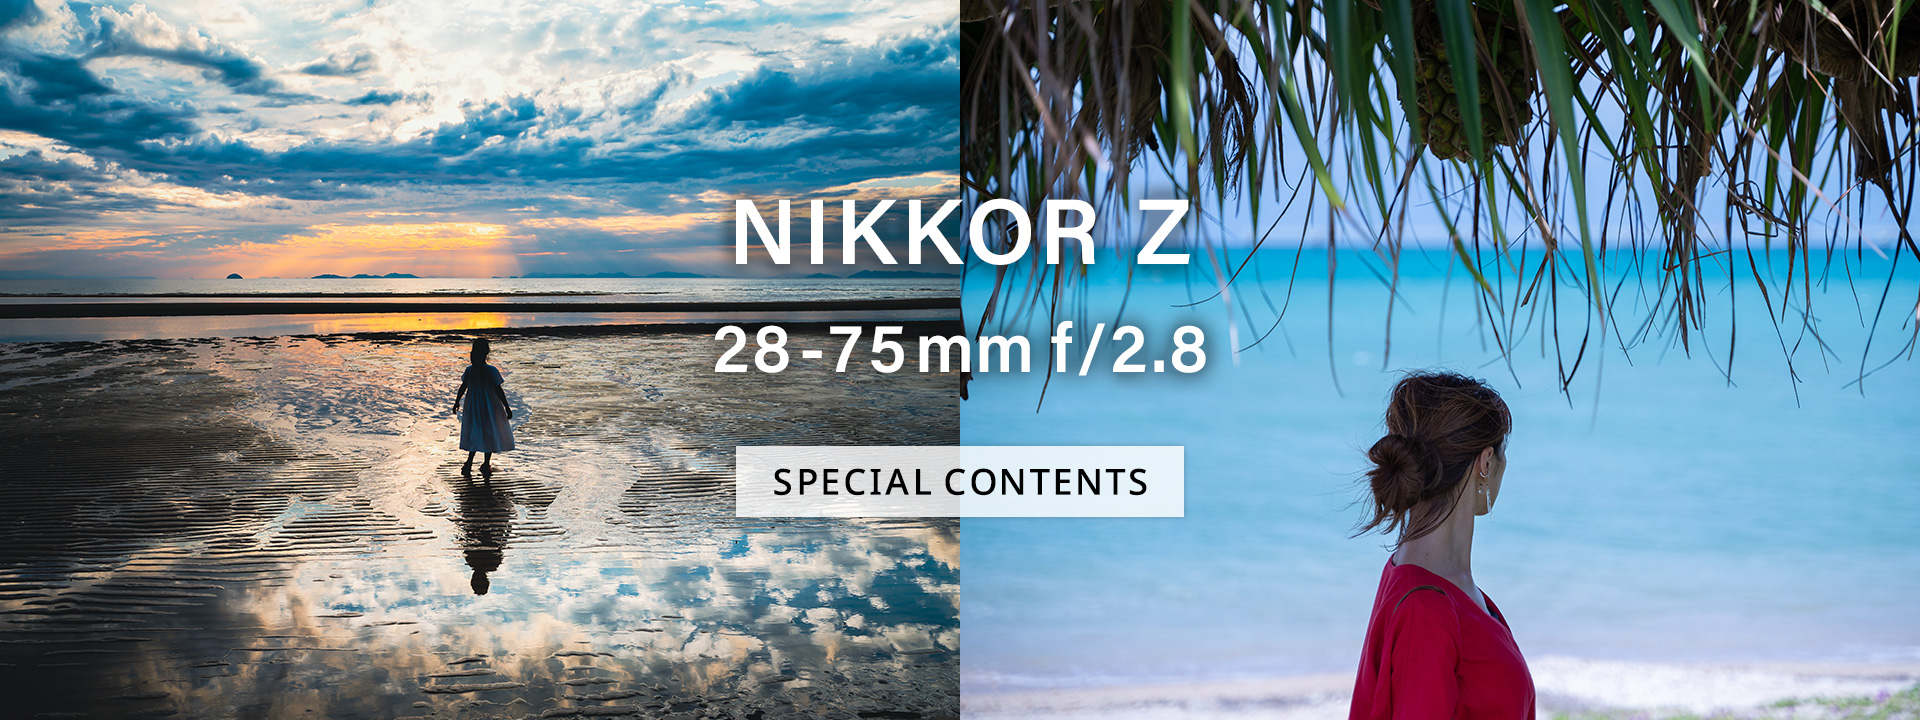 NIKKOR Z 28-75mm f/2.8 スペシャルコンテンツ